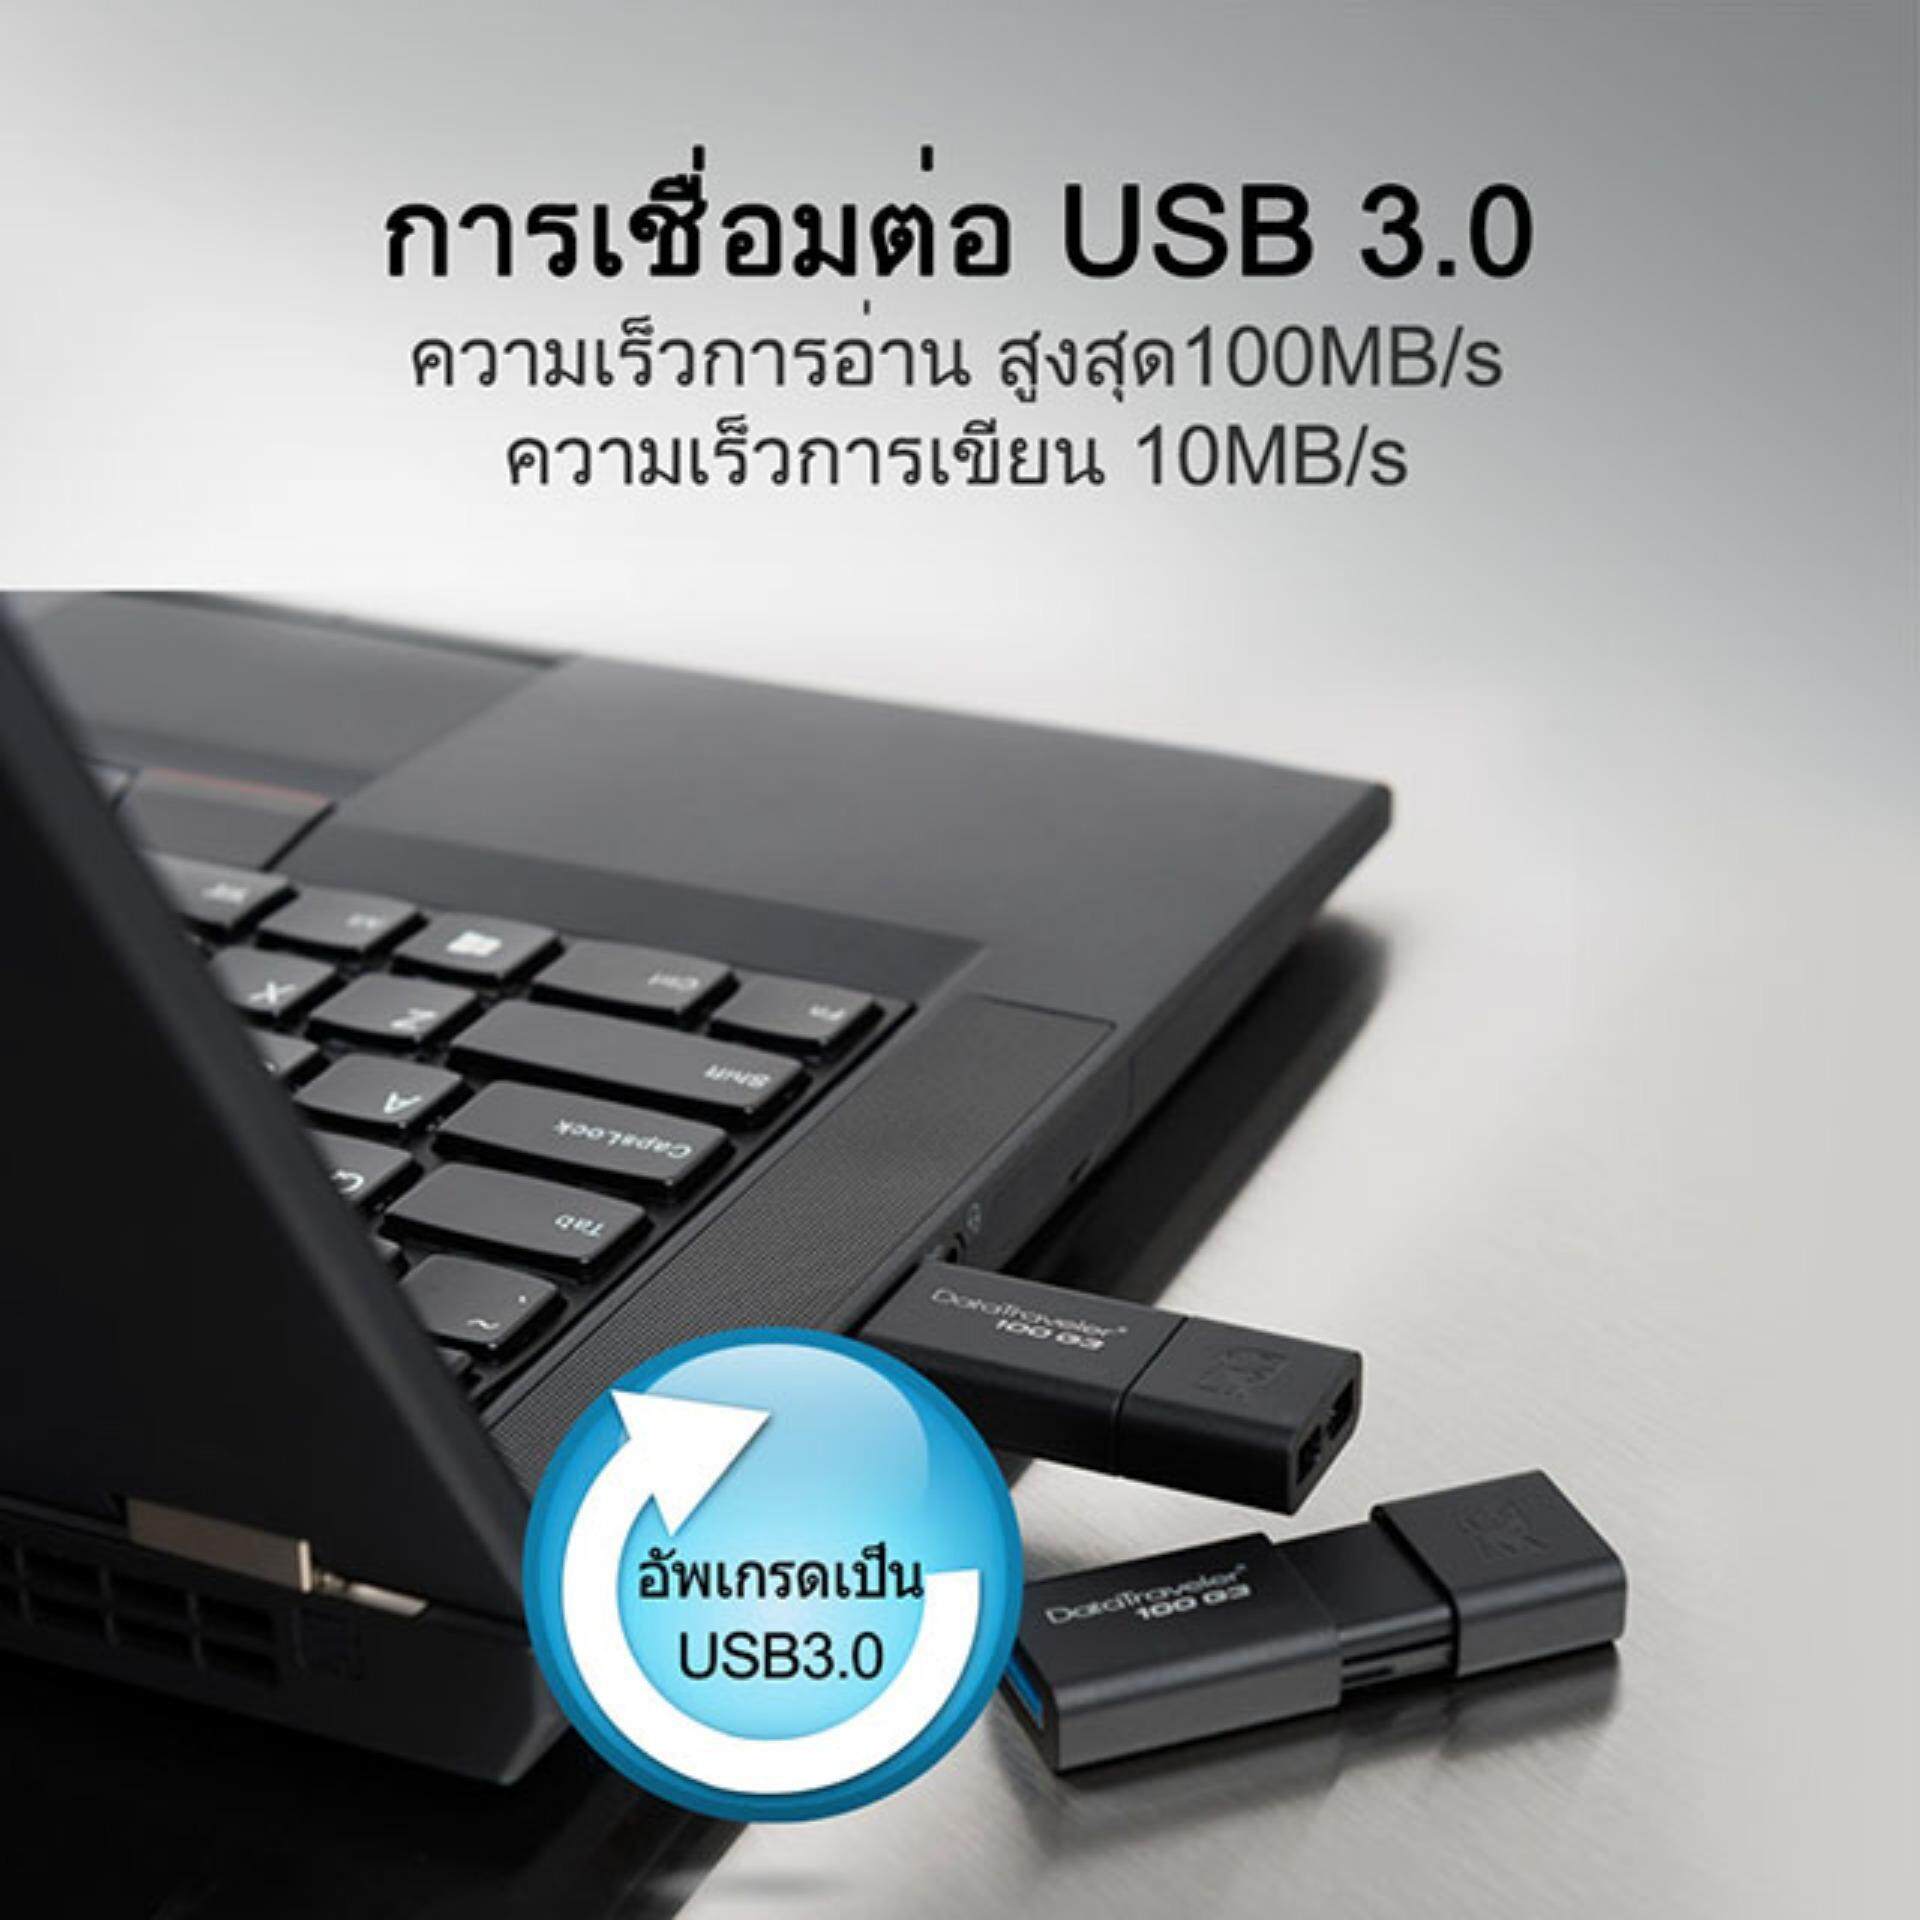 มุมมองเพิ่มเติมของสินค้า แฟลชไดร์ฟ Kingston Flash Data drive USB 3.1 16GB 32GB 64GB (ของแท้100%)